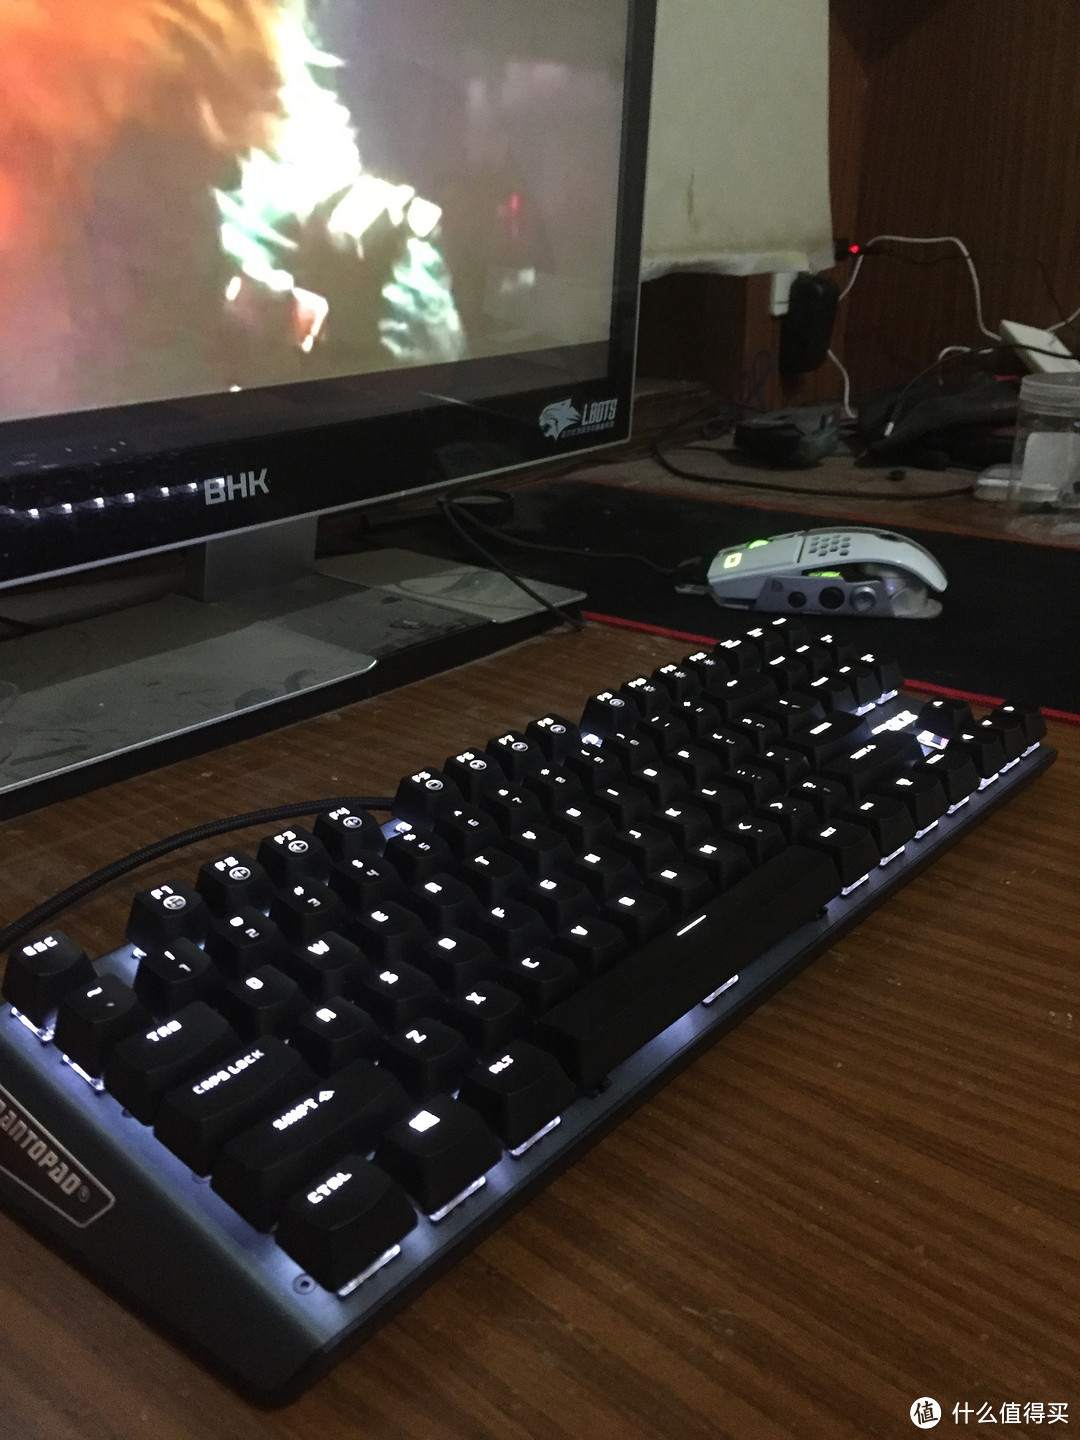 新年首次晒单：Rantopad 镭拓 MXX 背光游戏机械键盘 （深空灰-红轴）